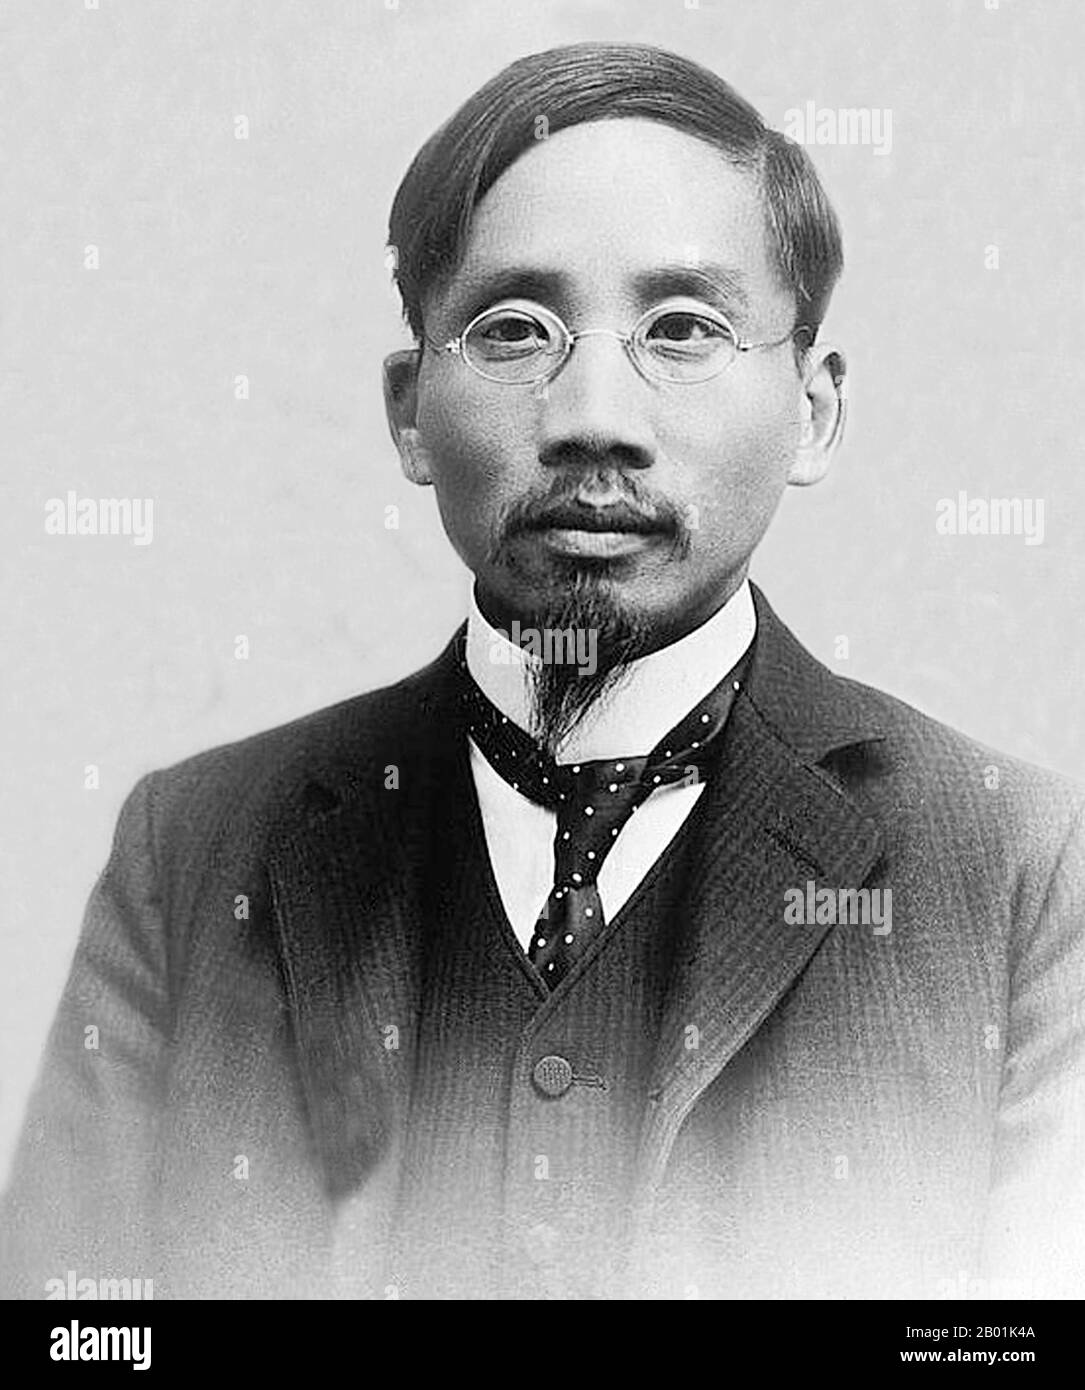 China: Cai Yuanpei (11. Januar 1868 bis 5. März 1940), Erzieher, Reformator und revolutionärer Denker, um 1910-1915. Cai Yuanpei, auch Tsai Yuan-Pei/Tsai Yuan-Bet, war ein chinesischer Pädagoge, Philosoph, Politiker, Esperantist und Präsident der Universität Peking. Er war bekannt für seine kritische Bewertung der chinesischen Kultur, die zur einflussreichen Bewegung des 4. Mai führte. In seinem Denken war Cai stark vom Anarchismus beeinflusst, und er war auch in der feministischen und der Neuen Kulturbewegung beteiligt. Stockfoto